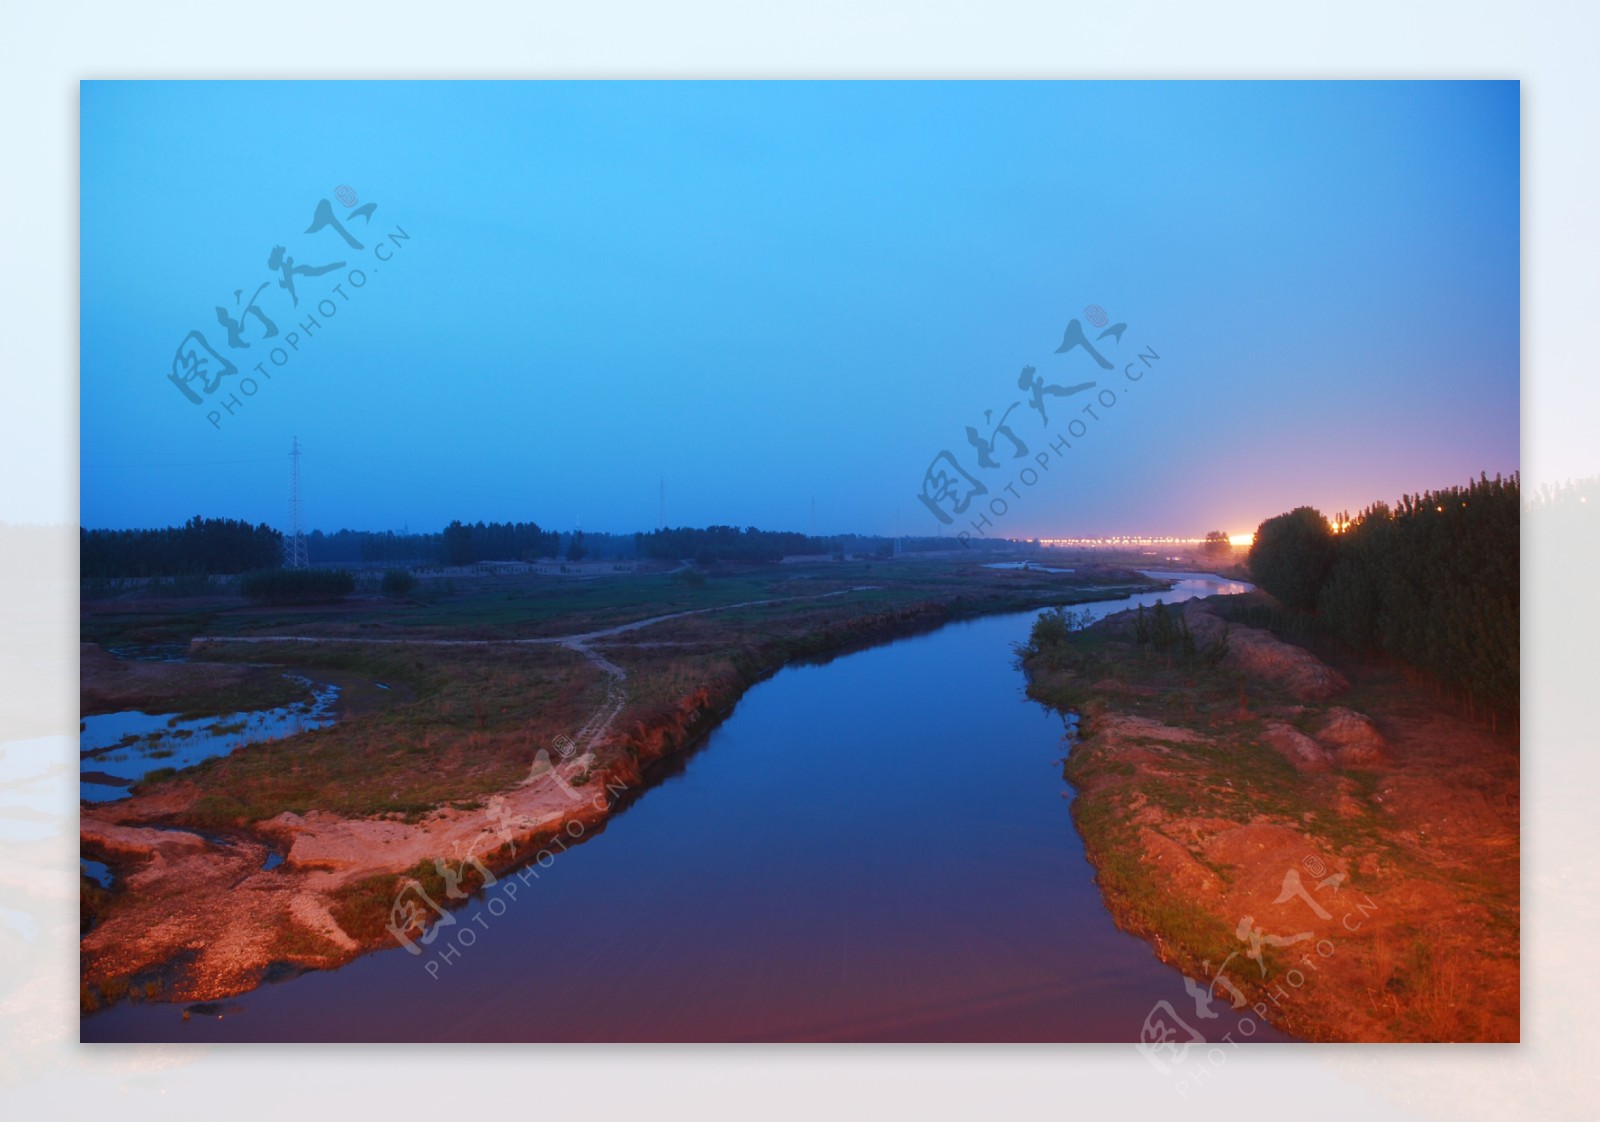 汾河夜景图片